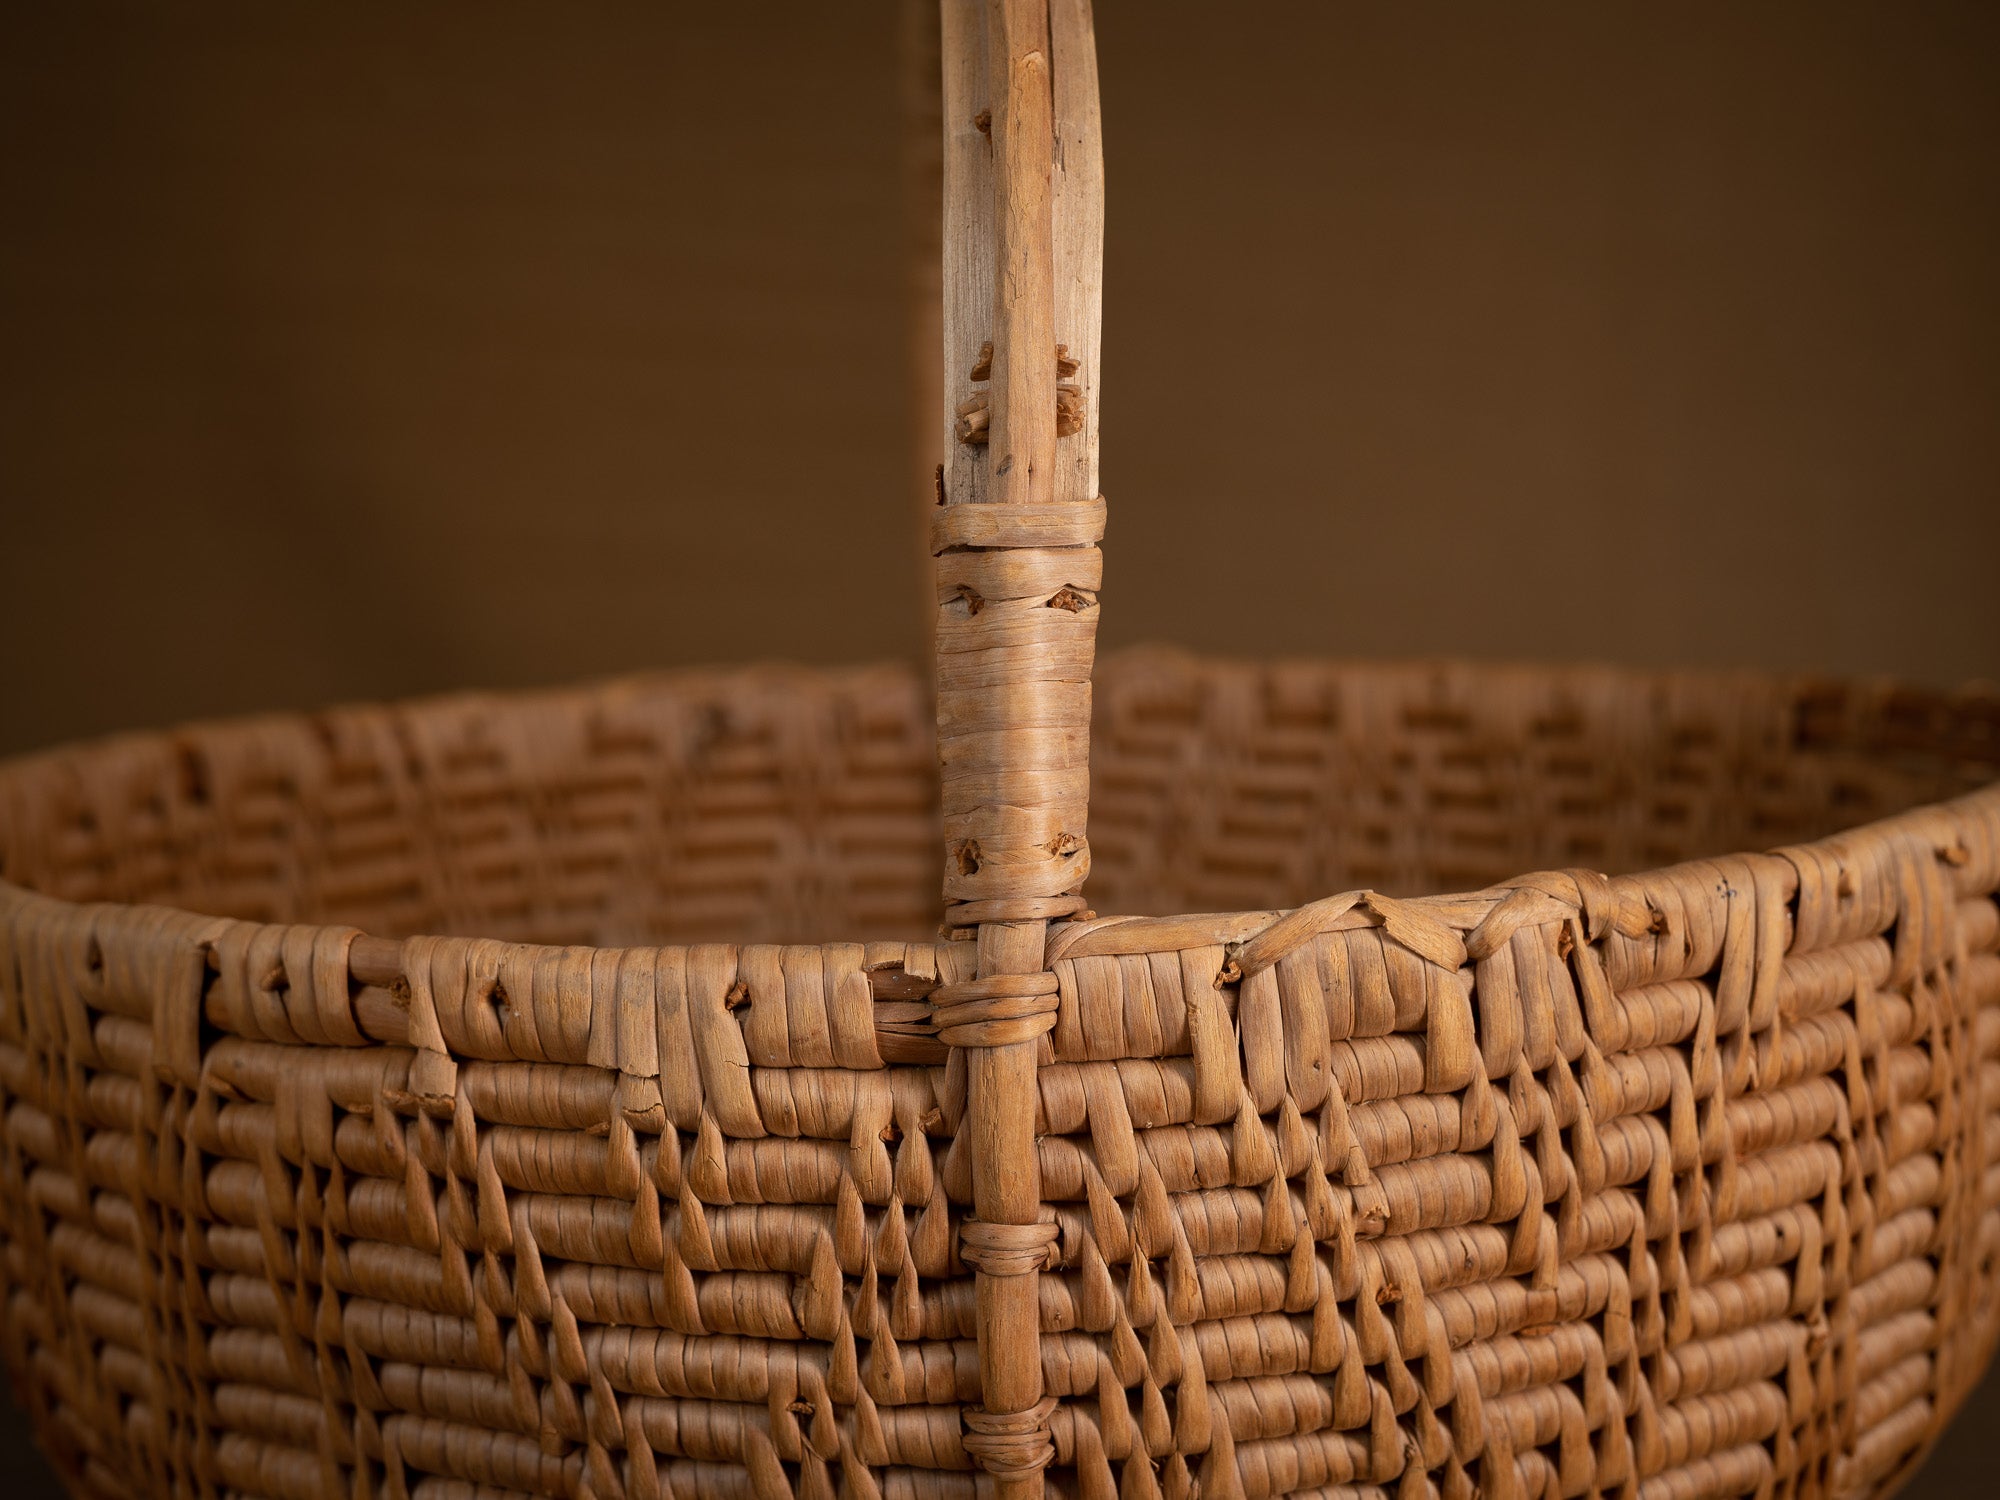 Large panier ansé en vannerie de racine de bouleau, Suède (XIXe siècle)..Large handle basket in birch root basketry, Sweden (19th century)